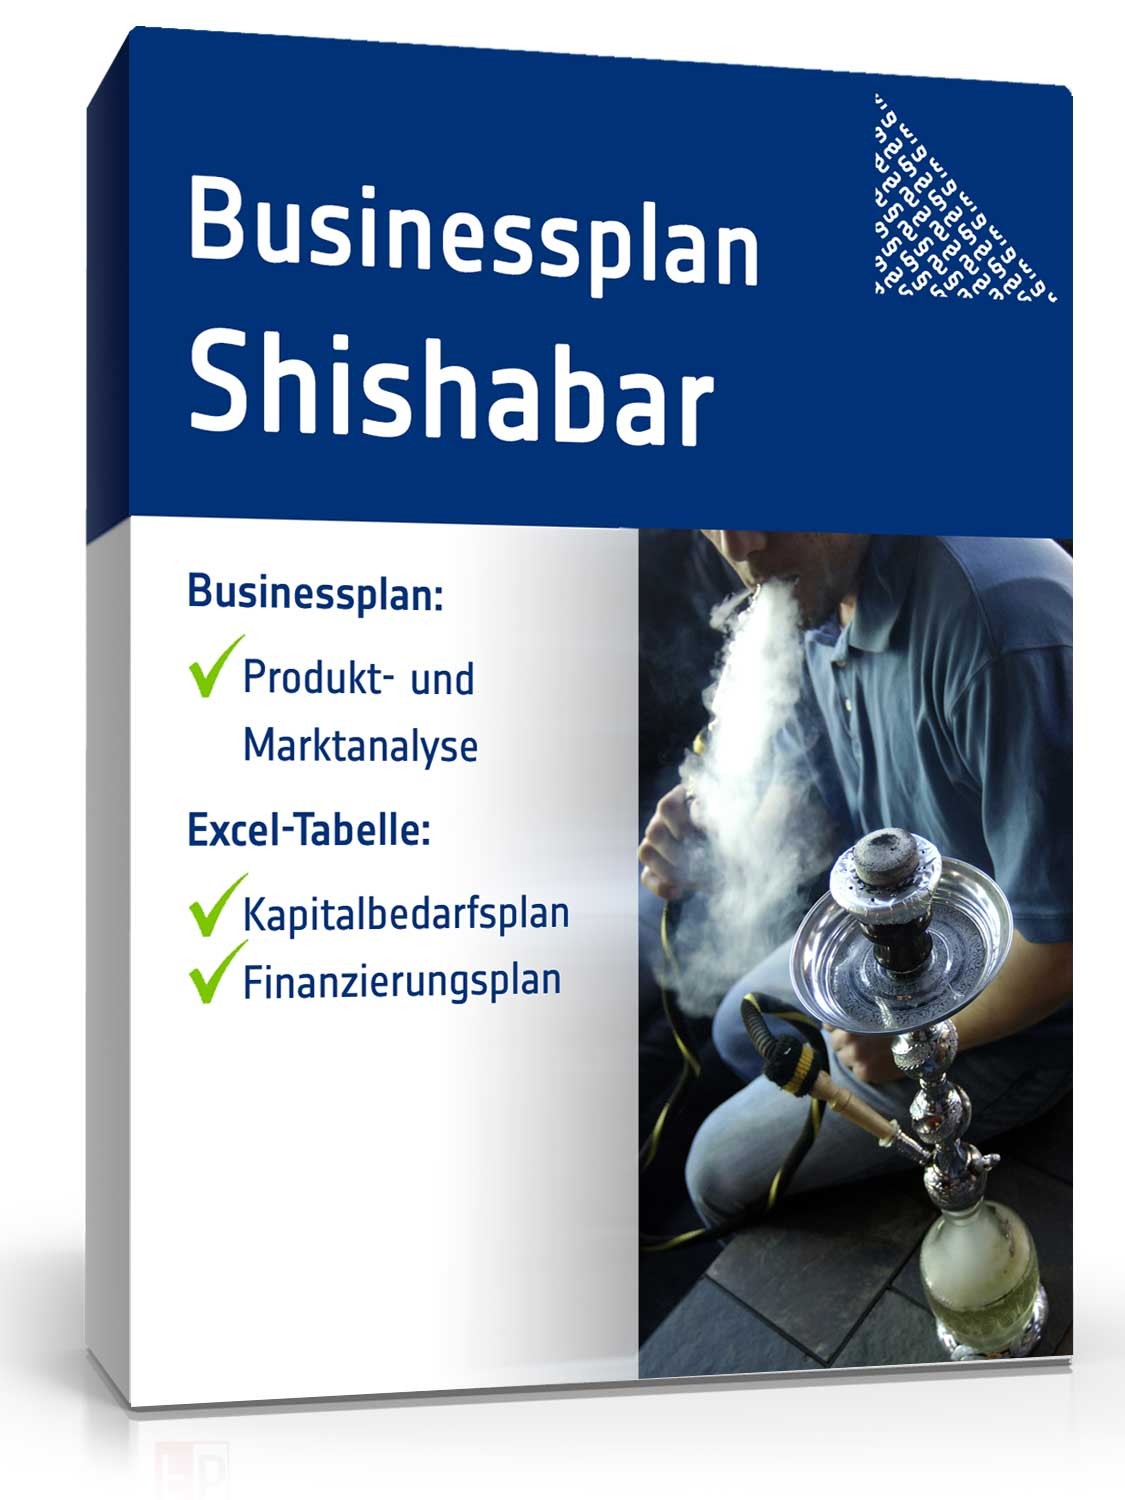 Hauptbild des Produkts: Businessplan Shisha Bar